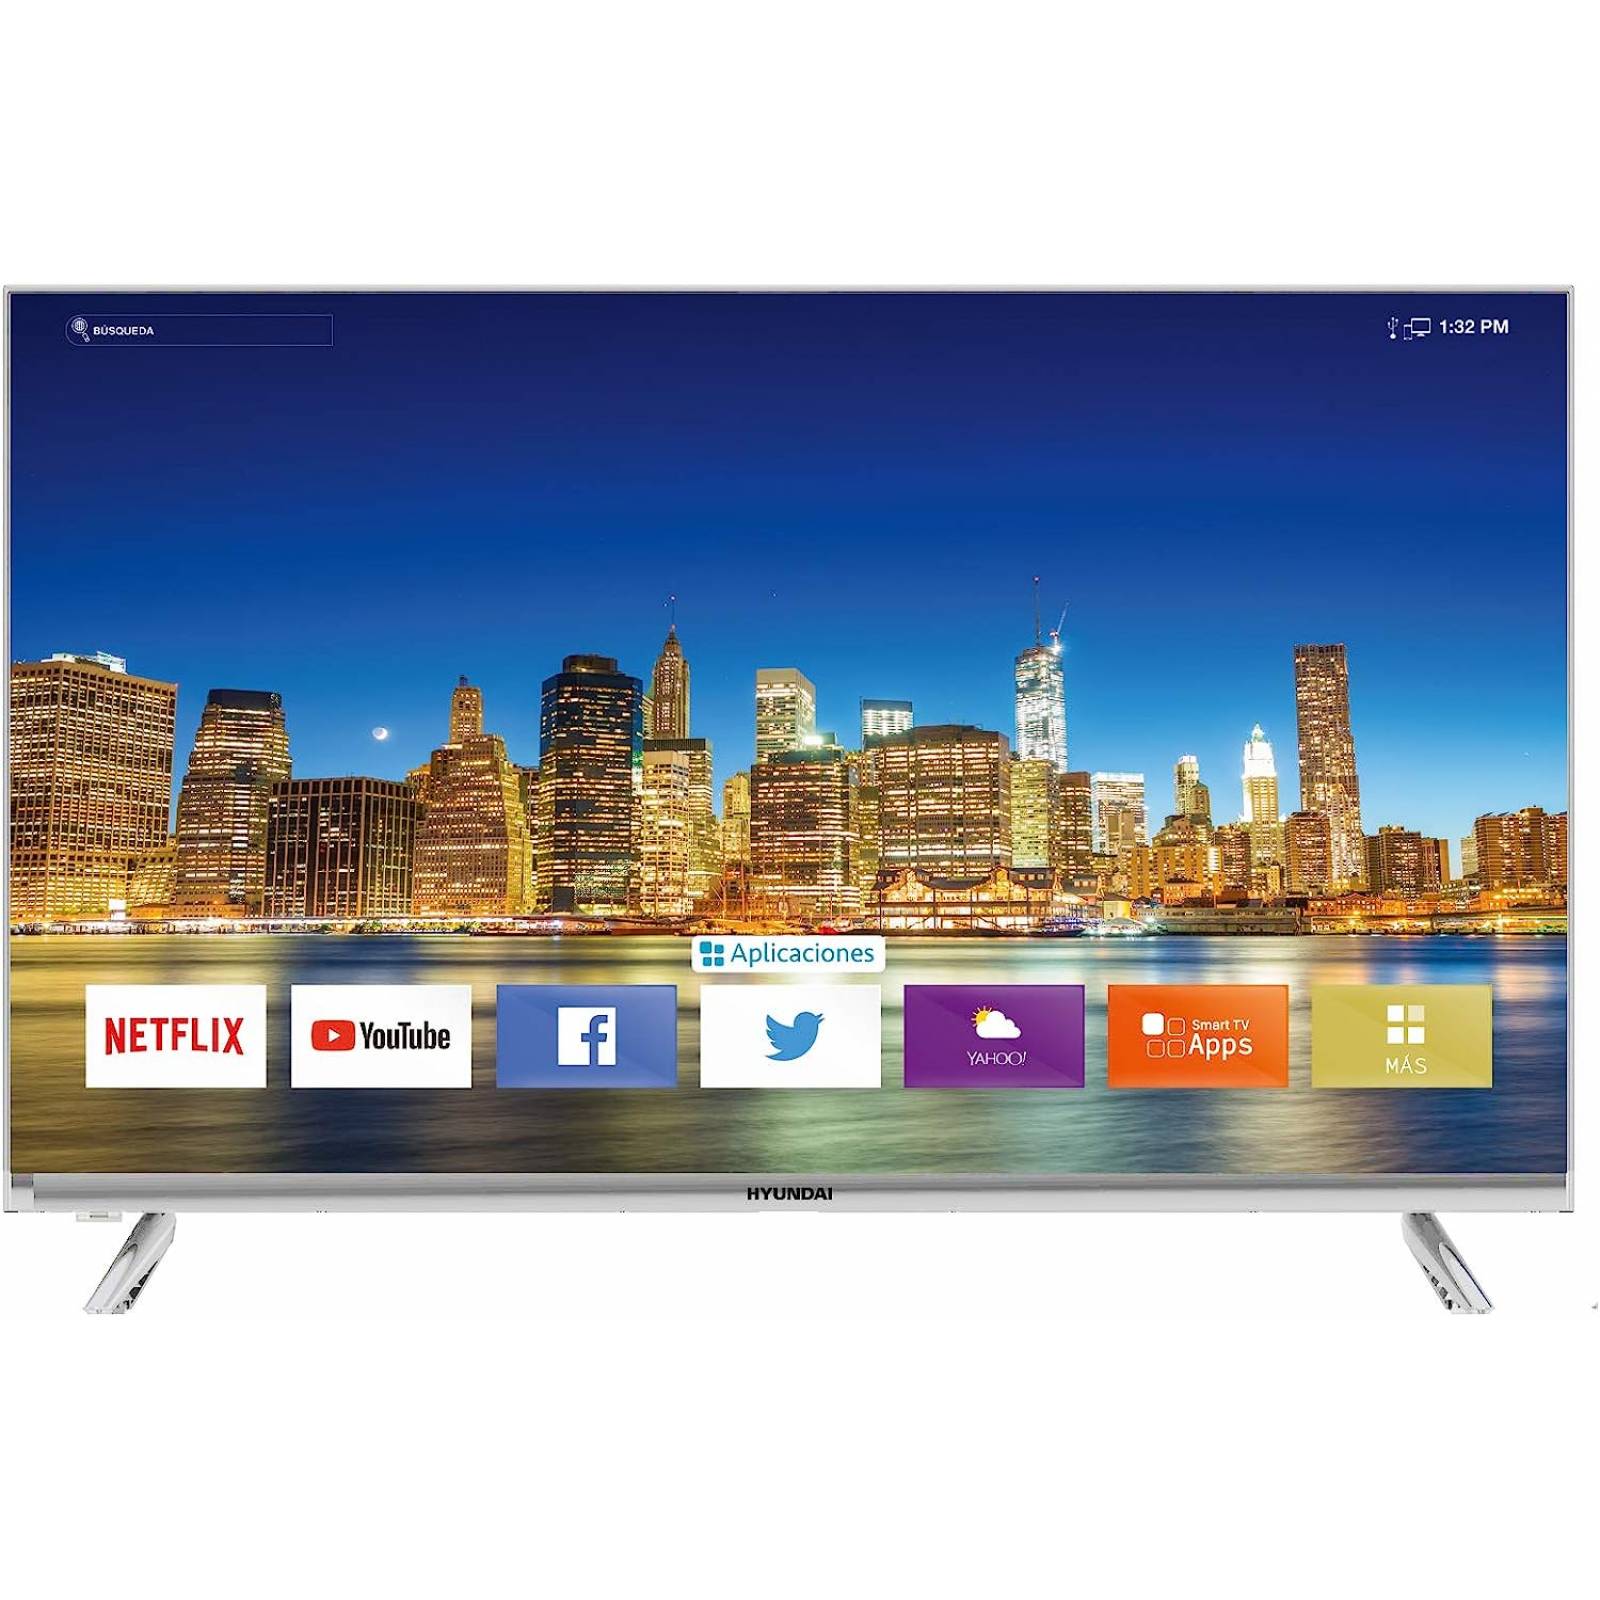 Smart Tv 65 Pulgadas Toshiba Pantalla UHD 4k Fire Tv 65C350LU  REACONDICIONADO